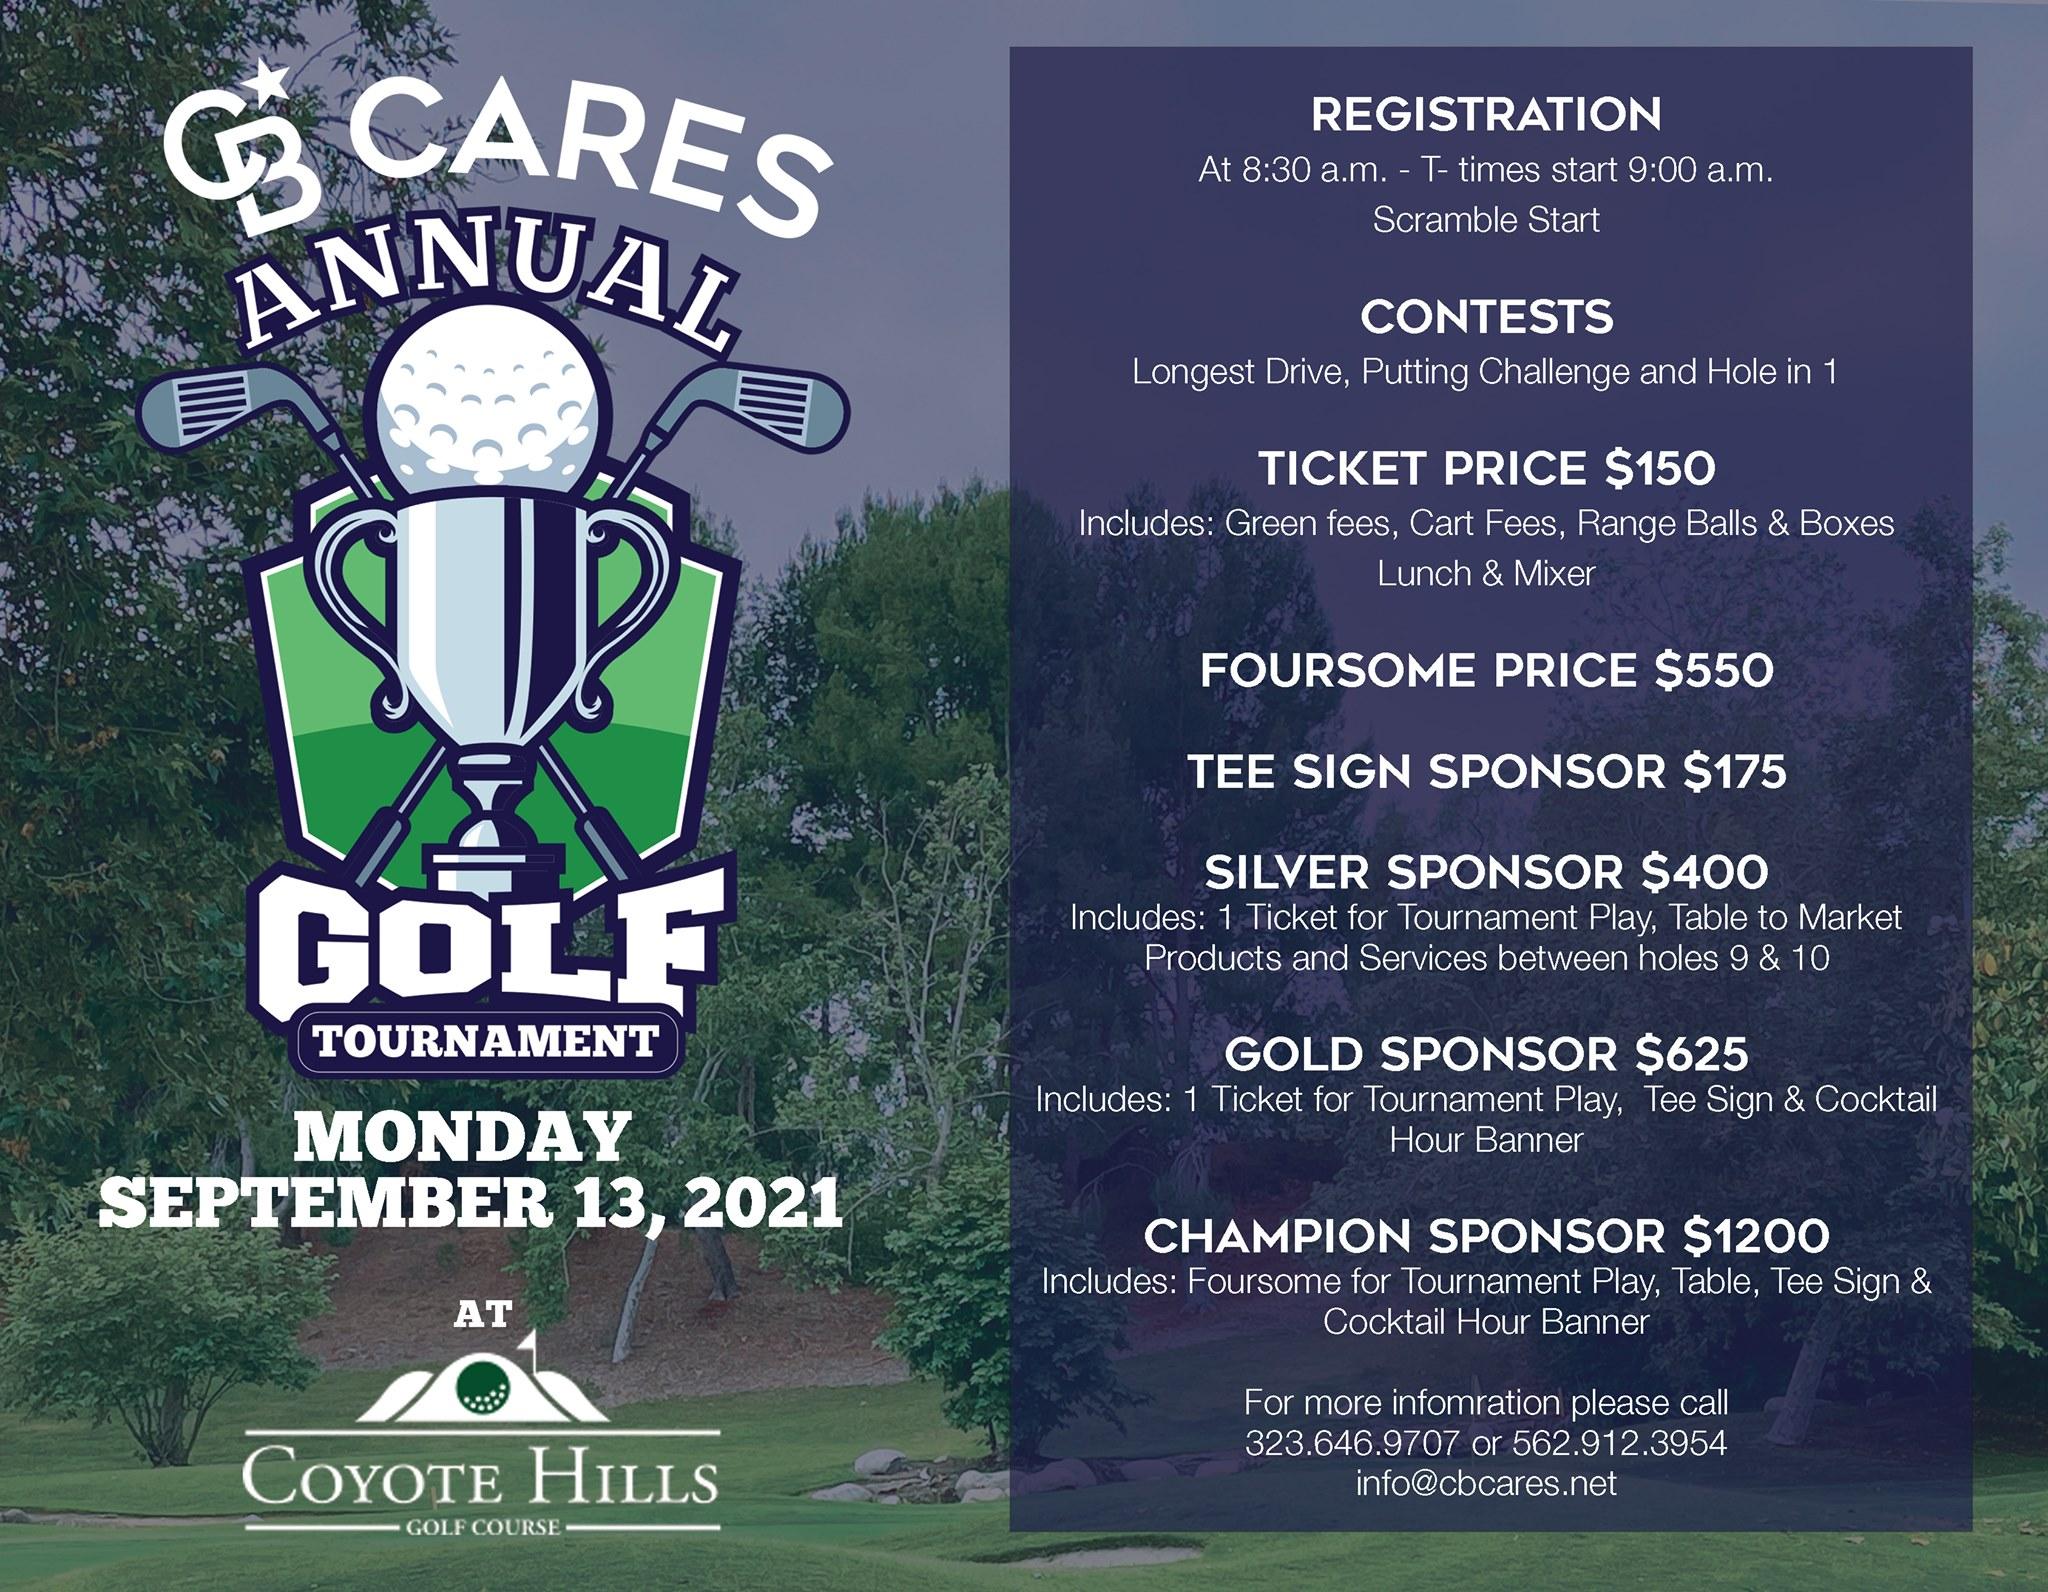 CB Cares Annual Golf Tournament